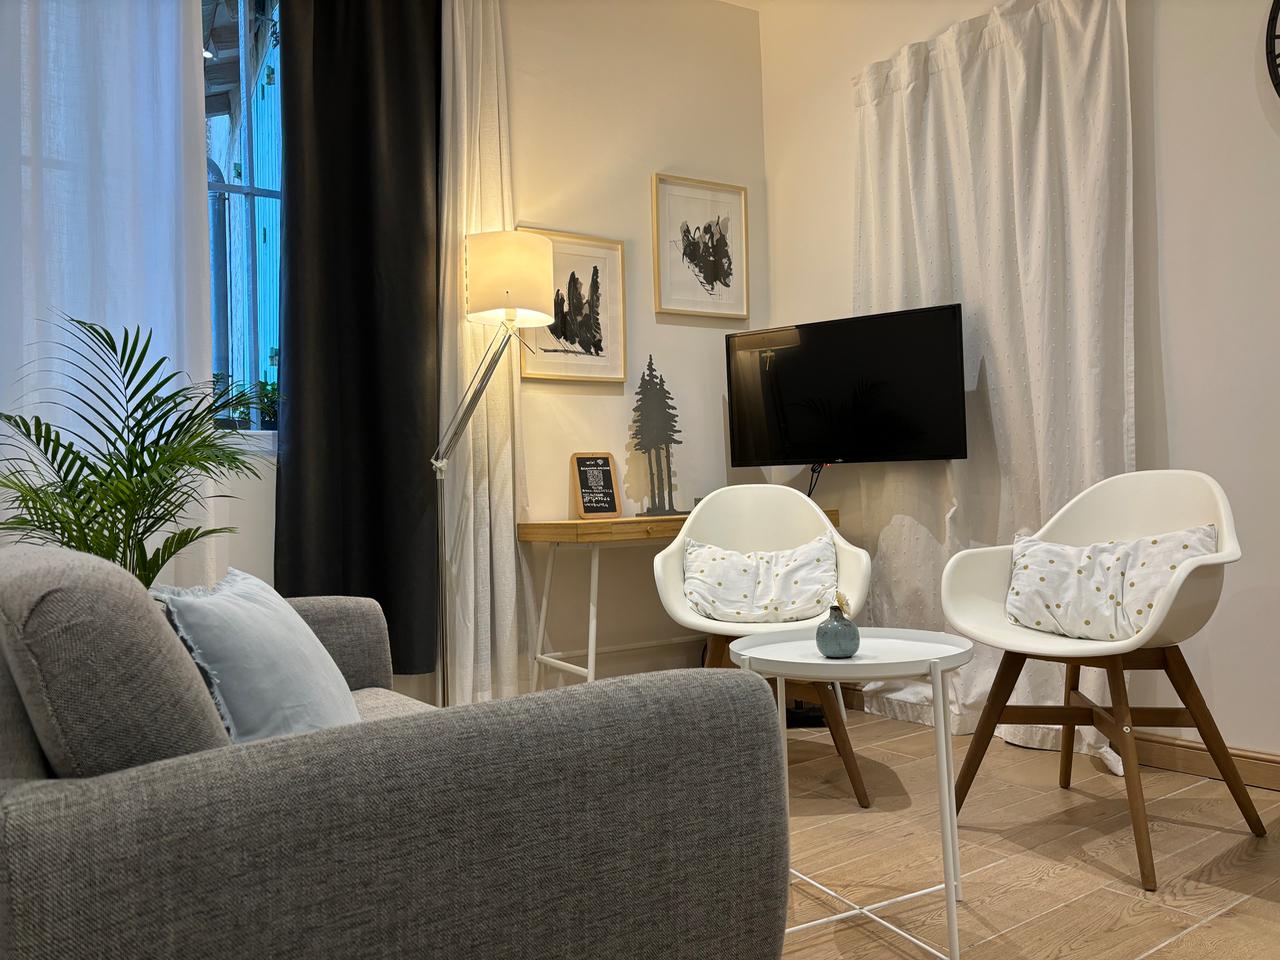 Hôte GreenGo: Appartement Ô 41 charmant cosy calme climatisé Avignon centre historique - Image 3